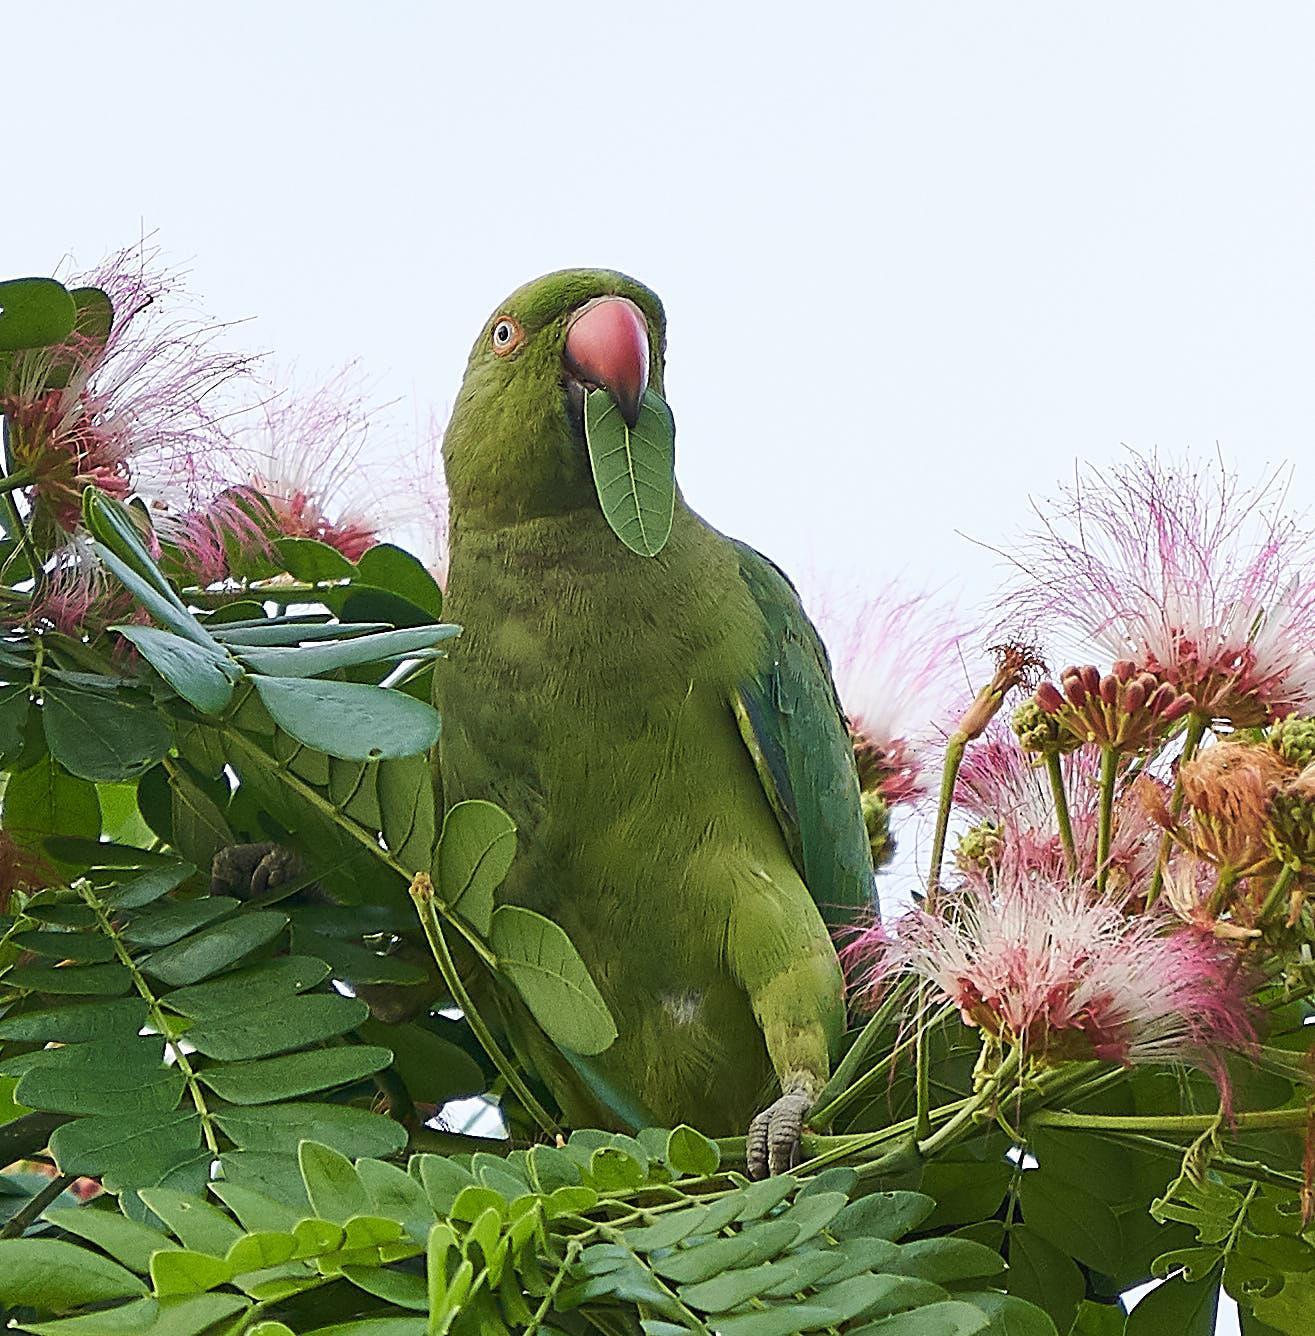 Alexandrine/Rose-ringed Parakeet Photo by Steven Cheong